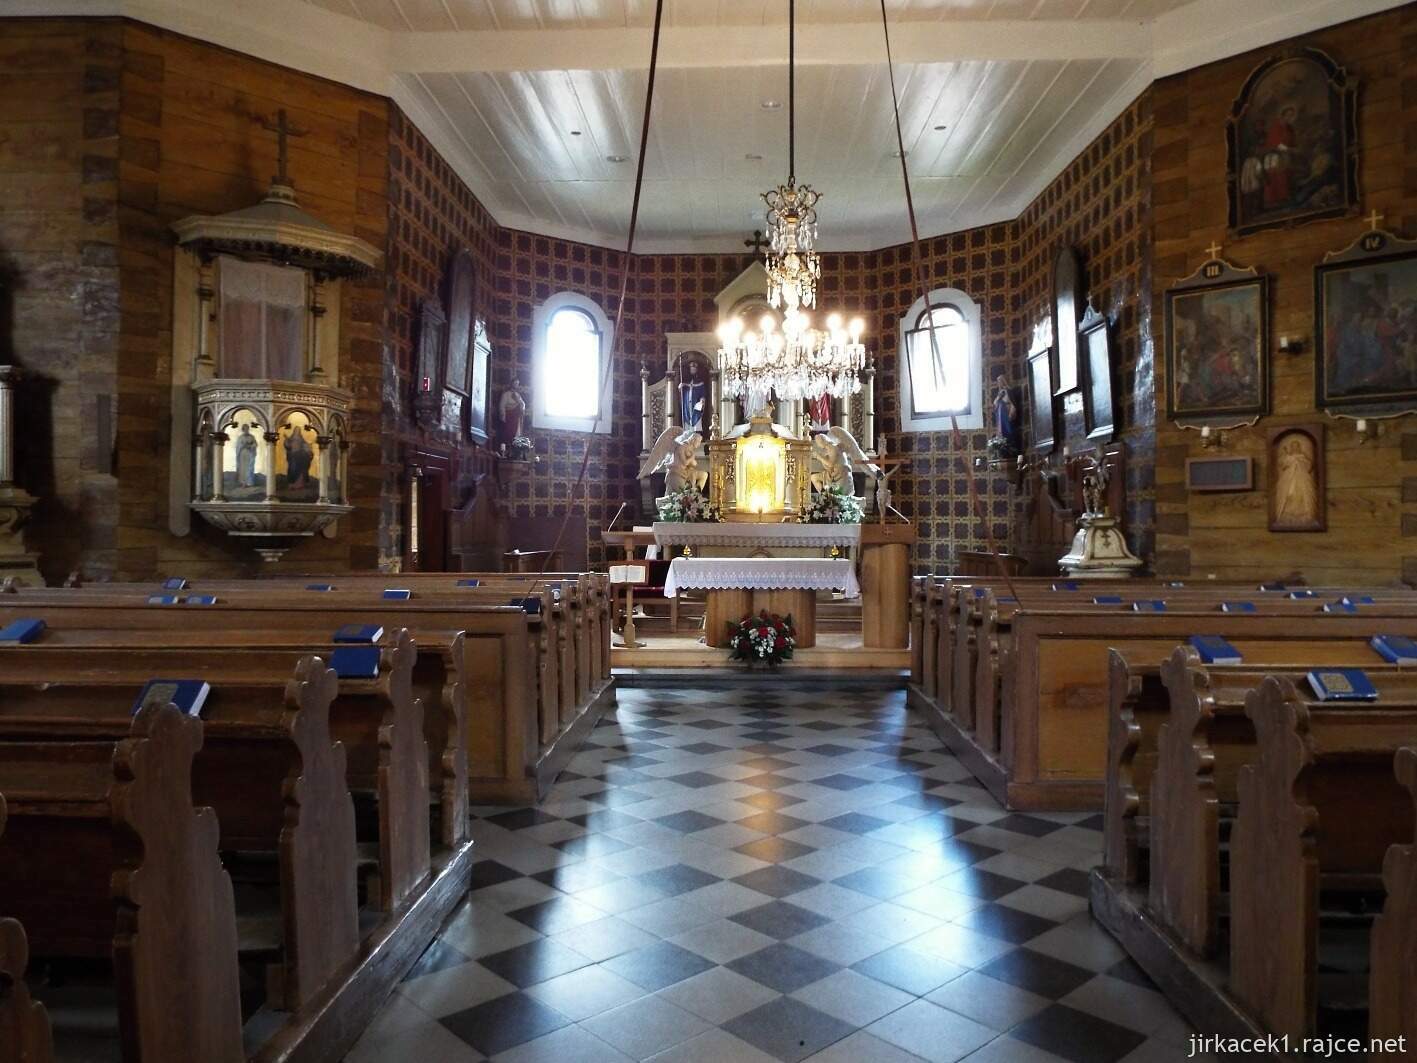 021 - Velké Karlovice - Kostel Panny Marie Sněžné 22 - interiér kostela